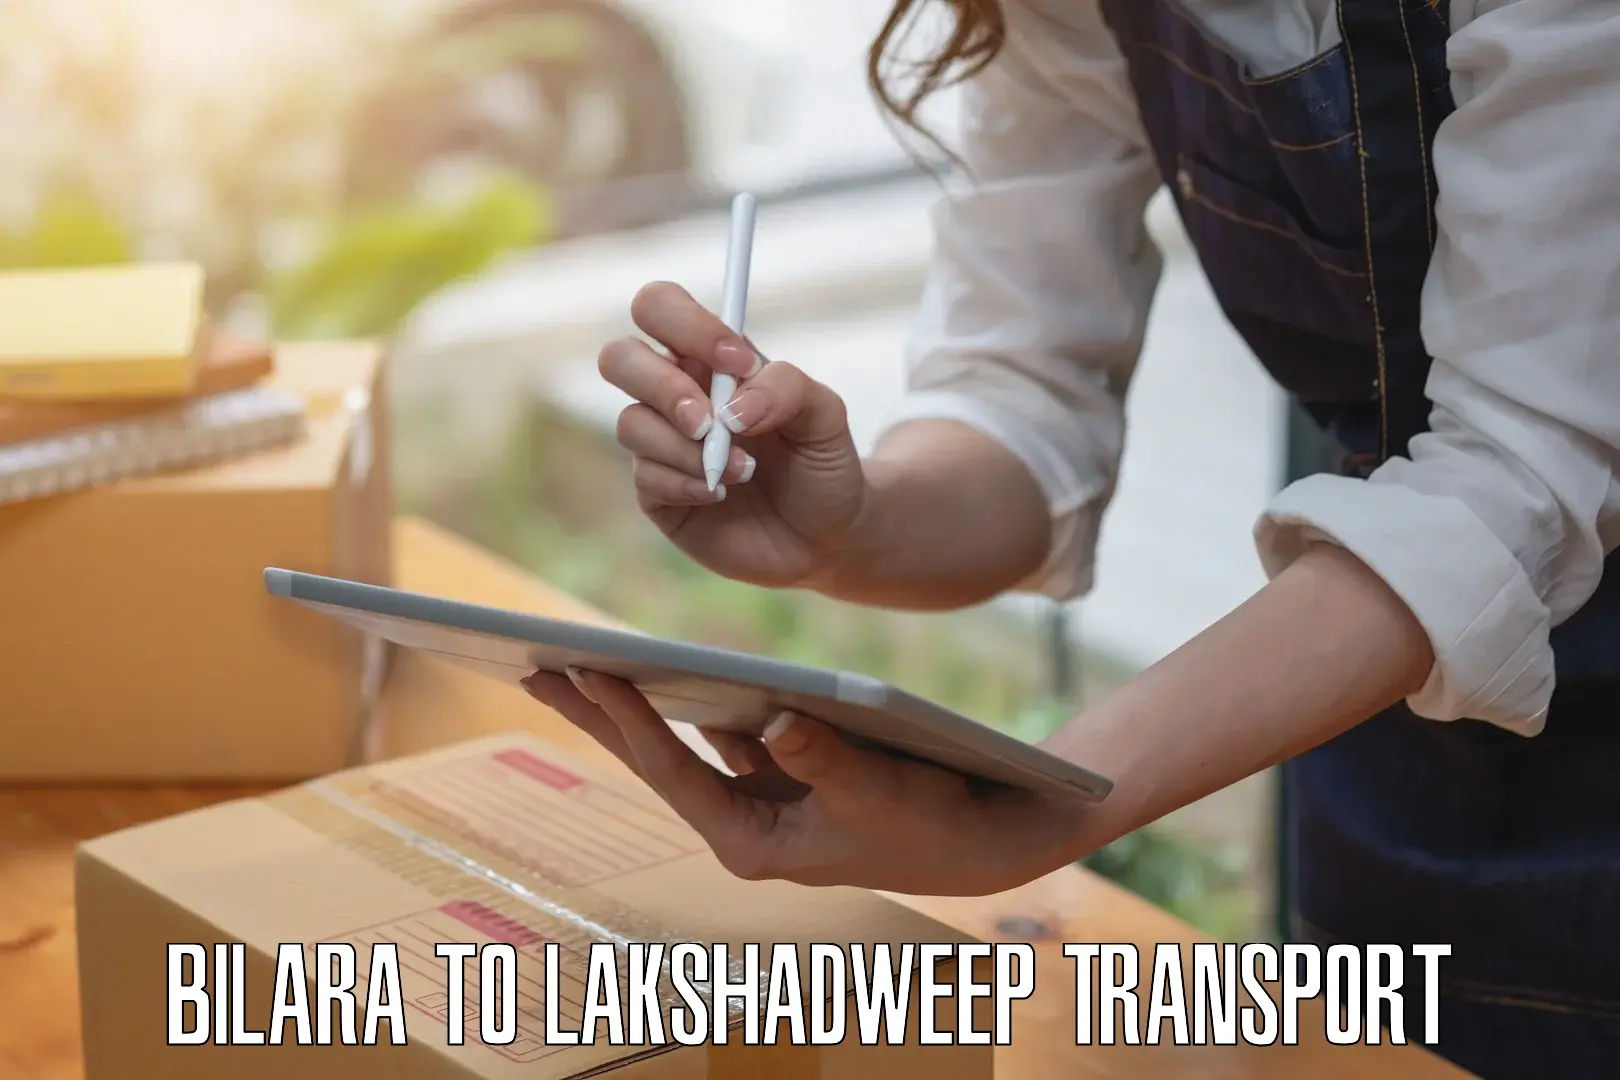 Vehicle transport services Bilara to Lakshadweep